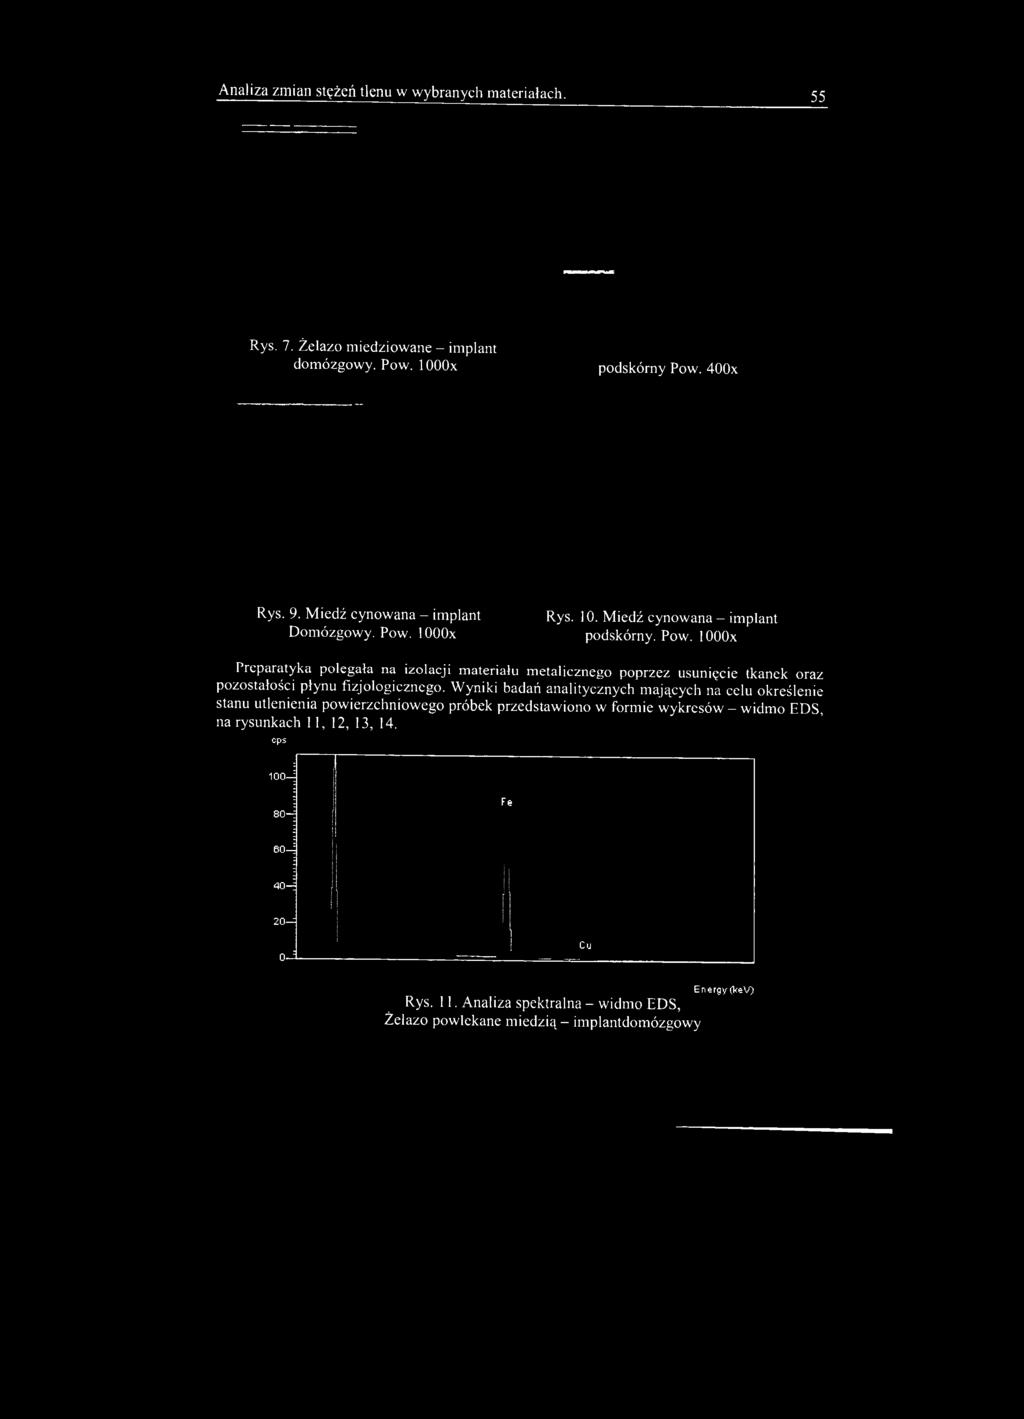 Wyniki badań analitycznych mających na celu określenie stanu utlenienia powierzchniowego próbek przedstawiono w formie wykresów - widmo EDS, na rysunkach 11, 12, 13,